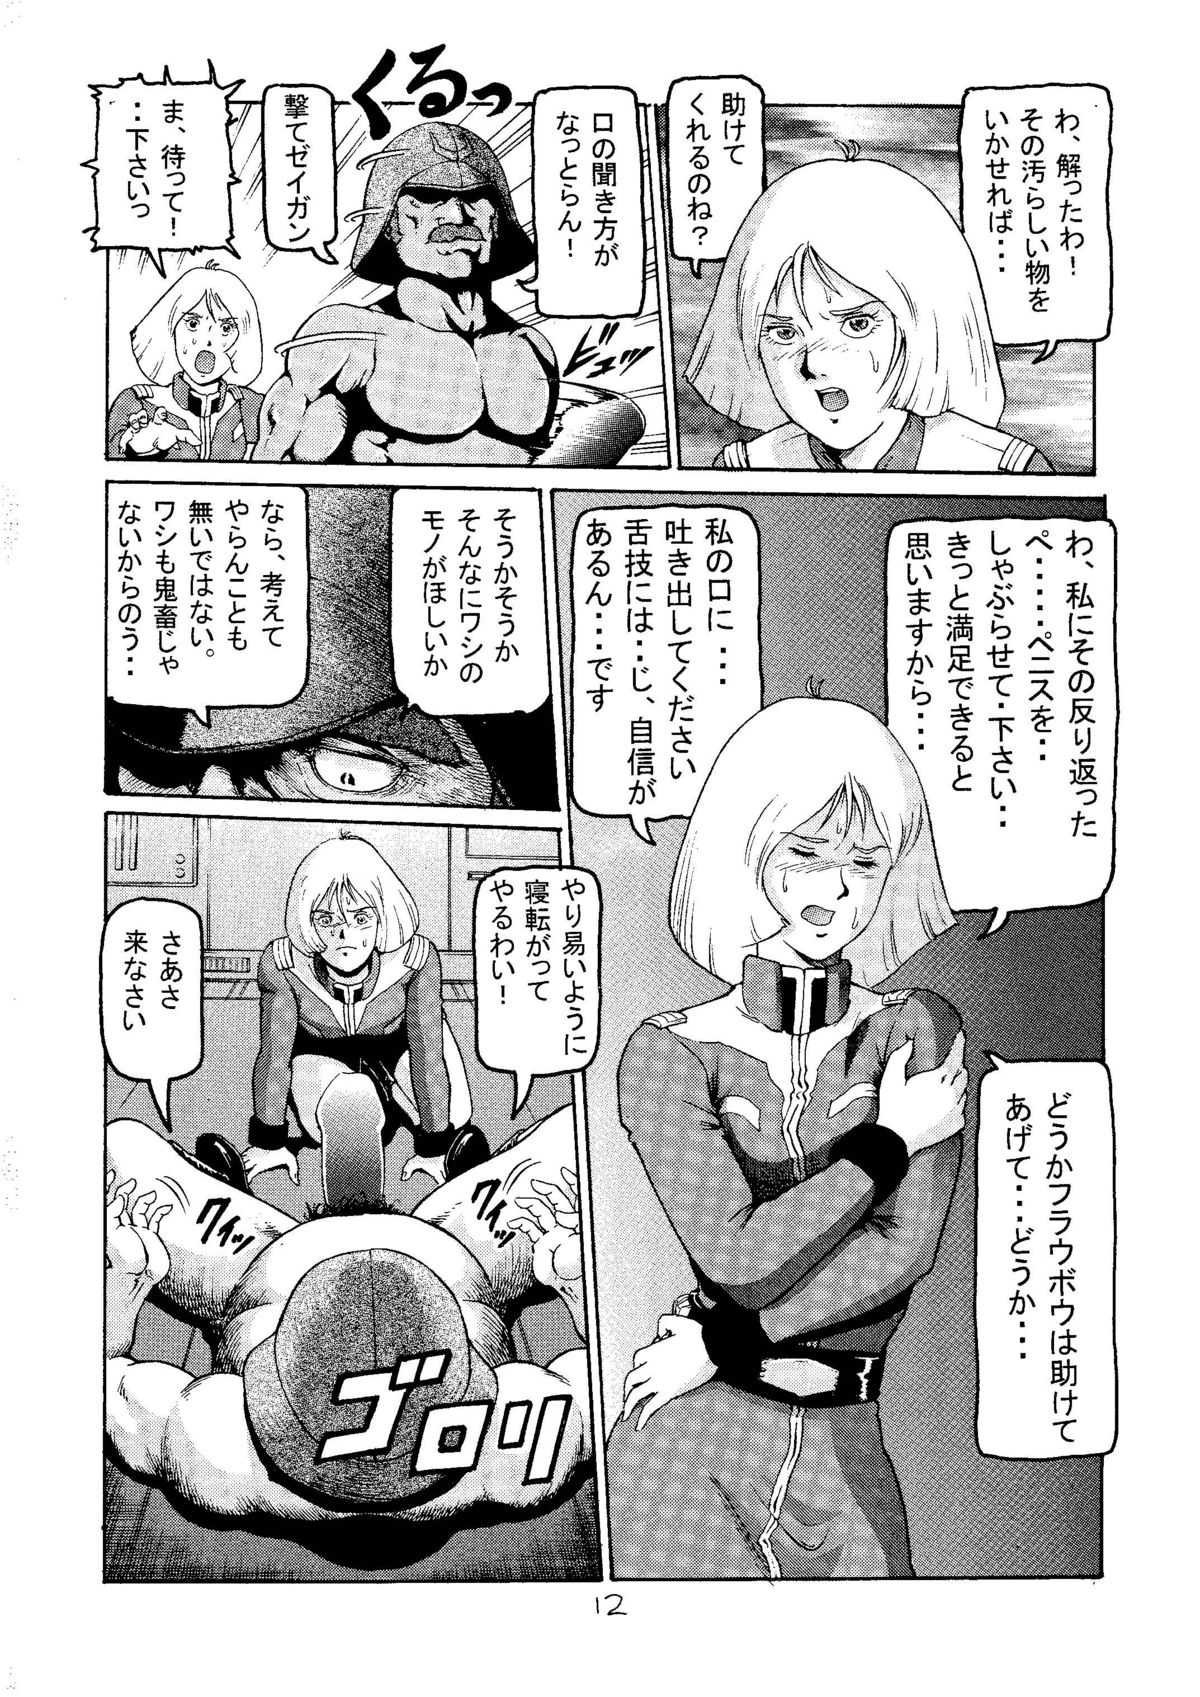 [Skirt Tsuki] 20 Seiki Saigo no Kinpatsu-san (Kidou Senshi Gundam / Mobile Suit Gundam) [スカートつき] 20世紀最後の金髪さん (起動戦士ガンダム)